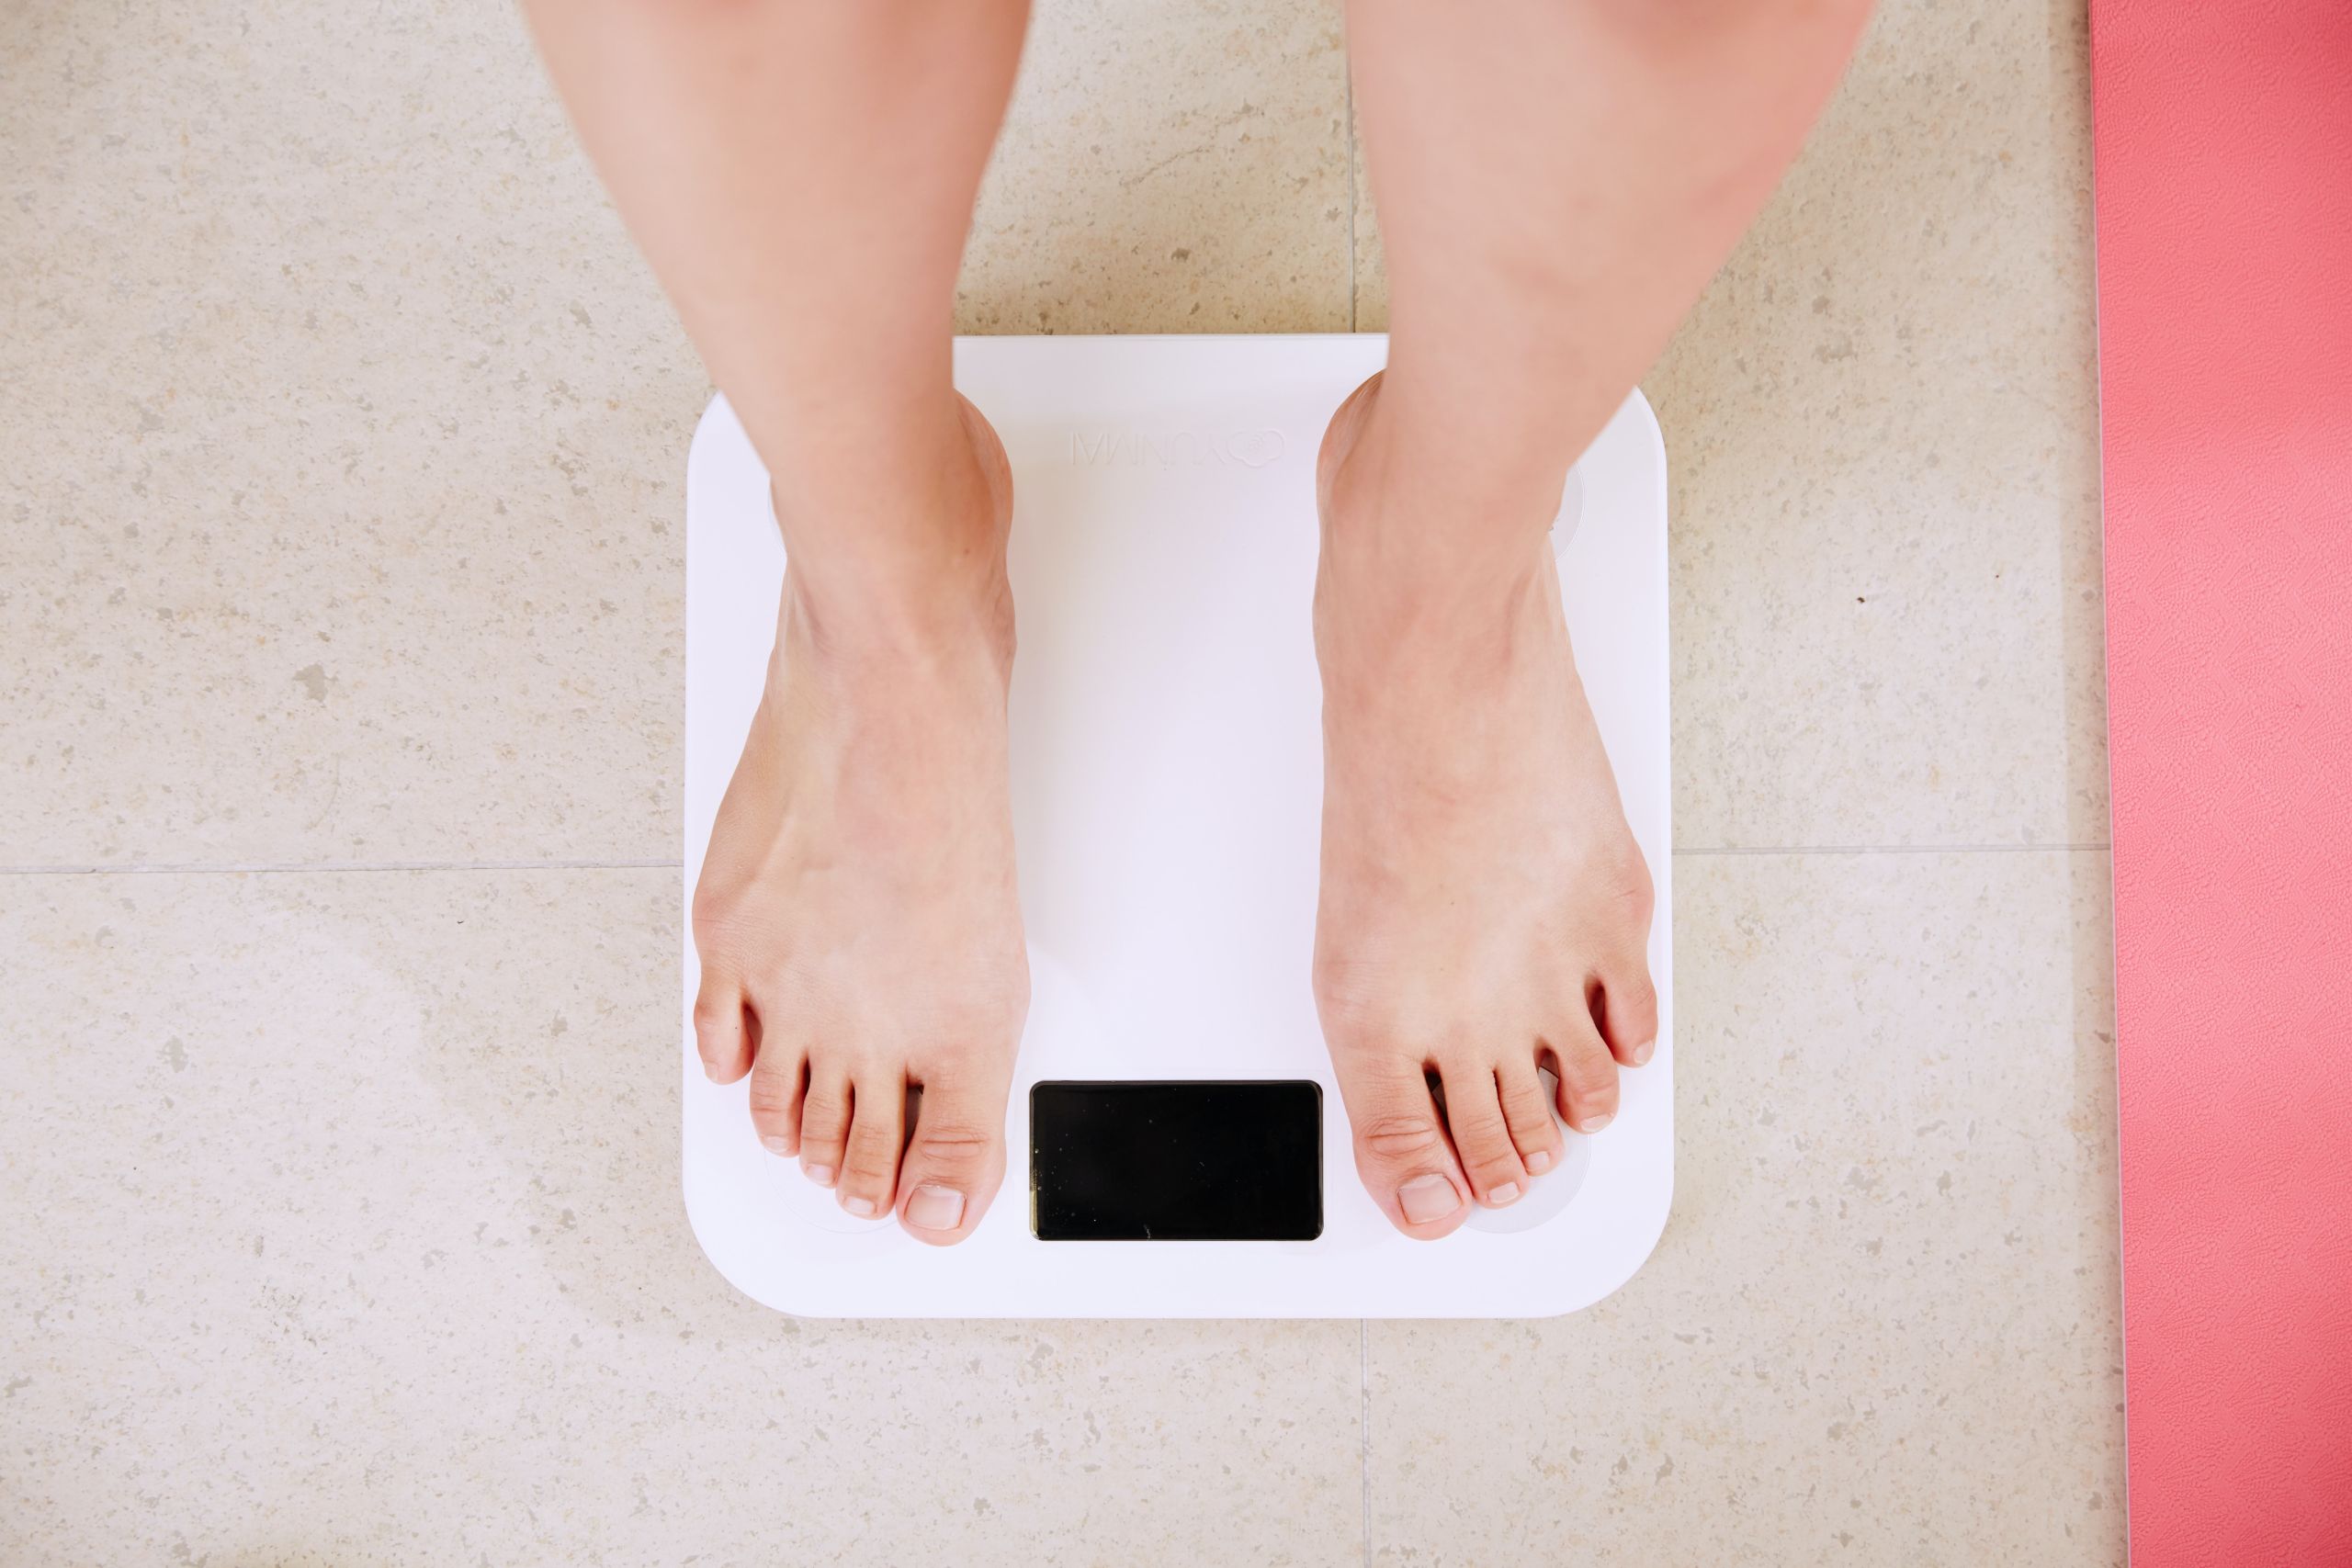 Γρήγορη απώλεια βάρους: είστε σίγουροι ότι αυτό θέλετε πραγματικά;